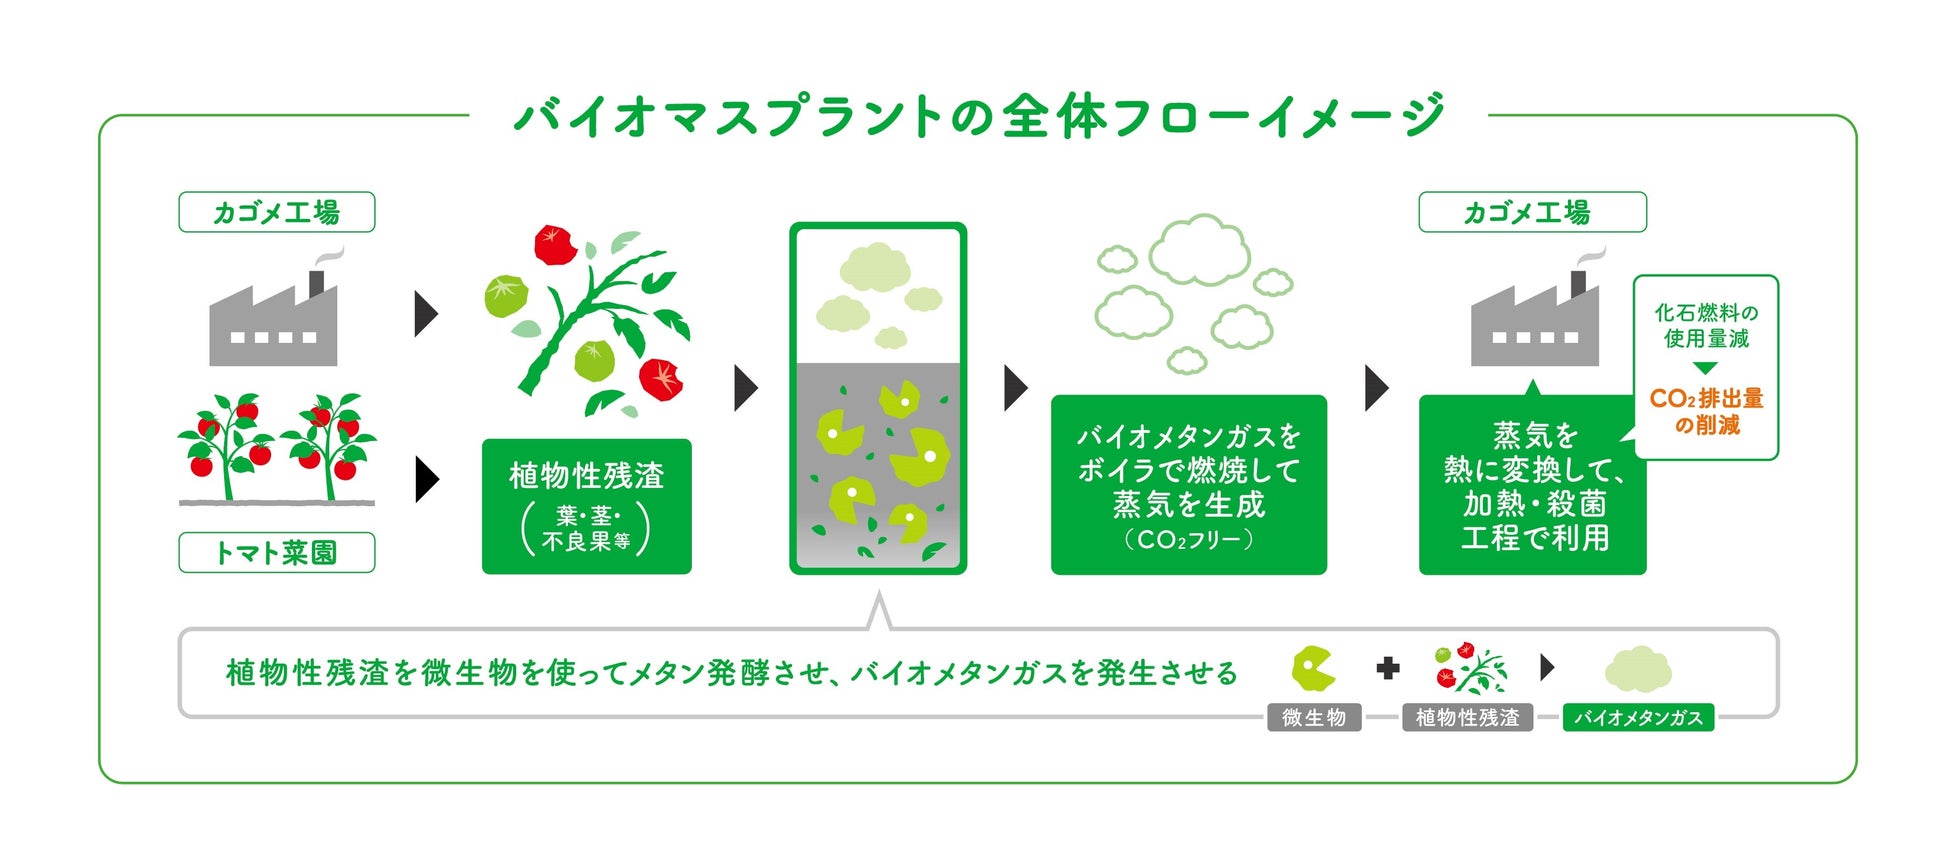 野菜飲料を製造する富士見工場、野菜の残渣を再生エネルギーとして本格利用のサブ画像1